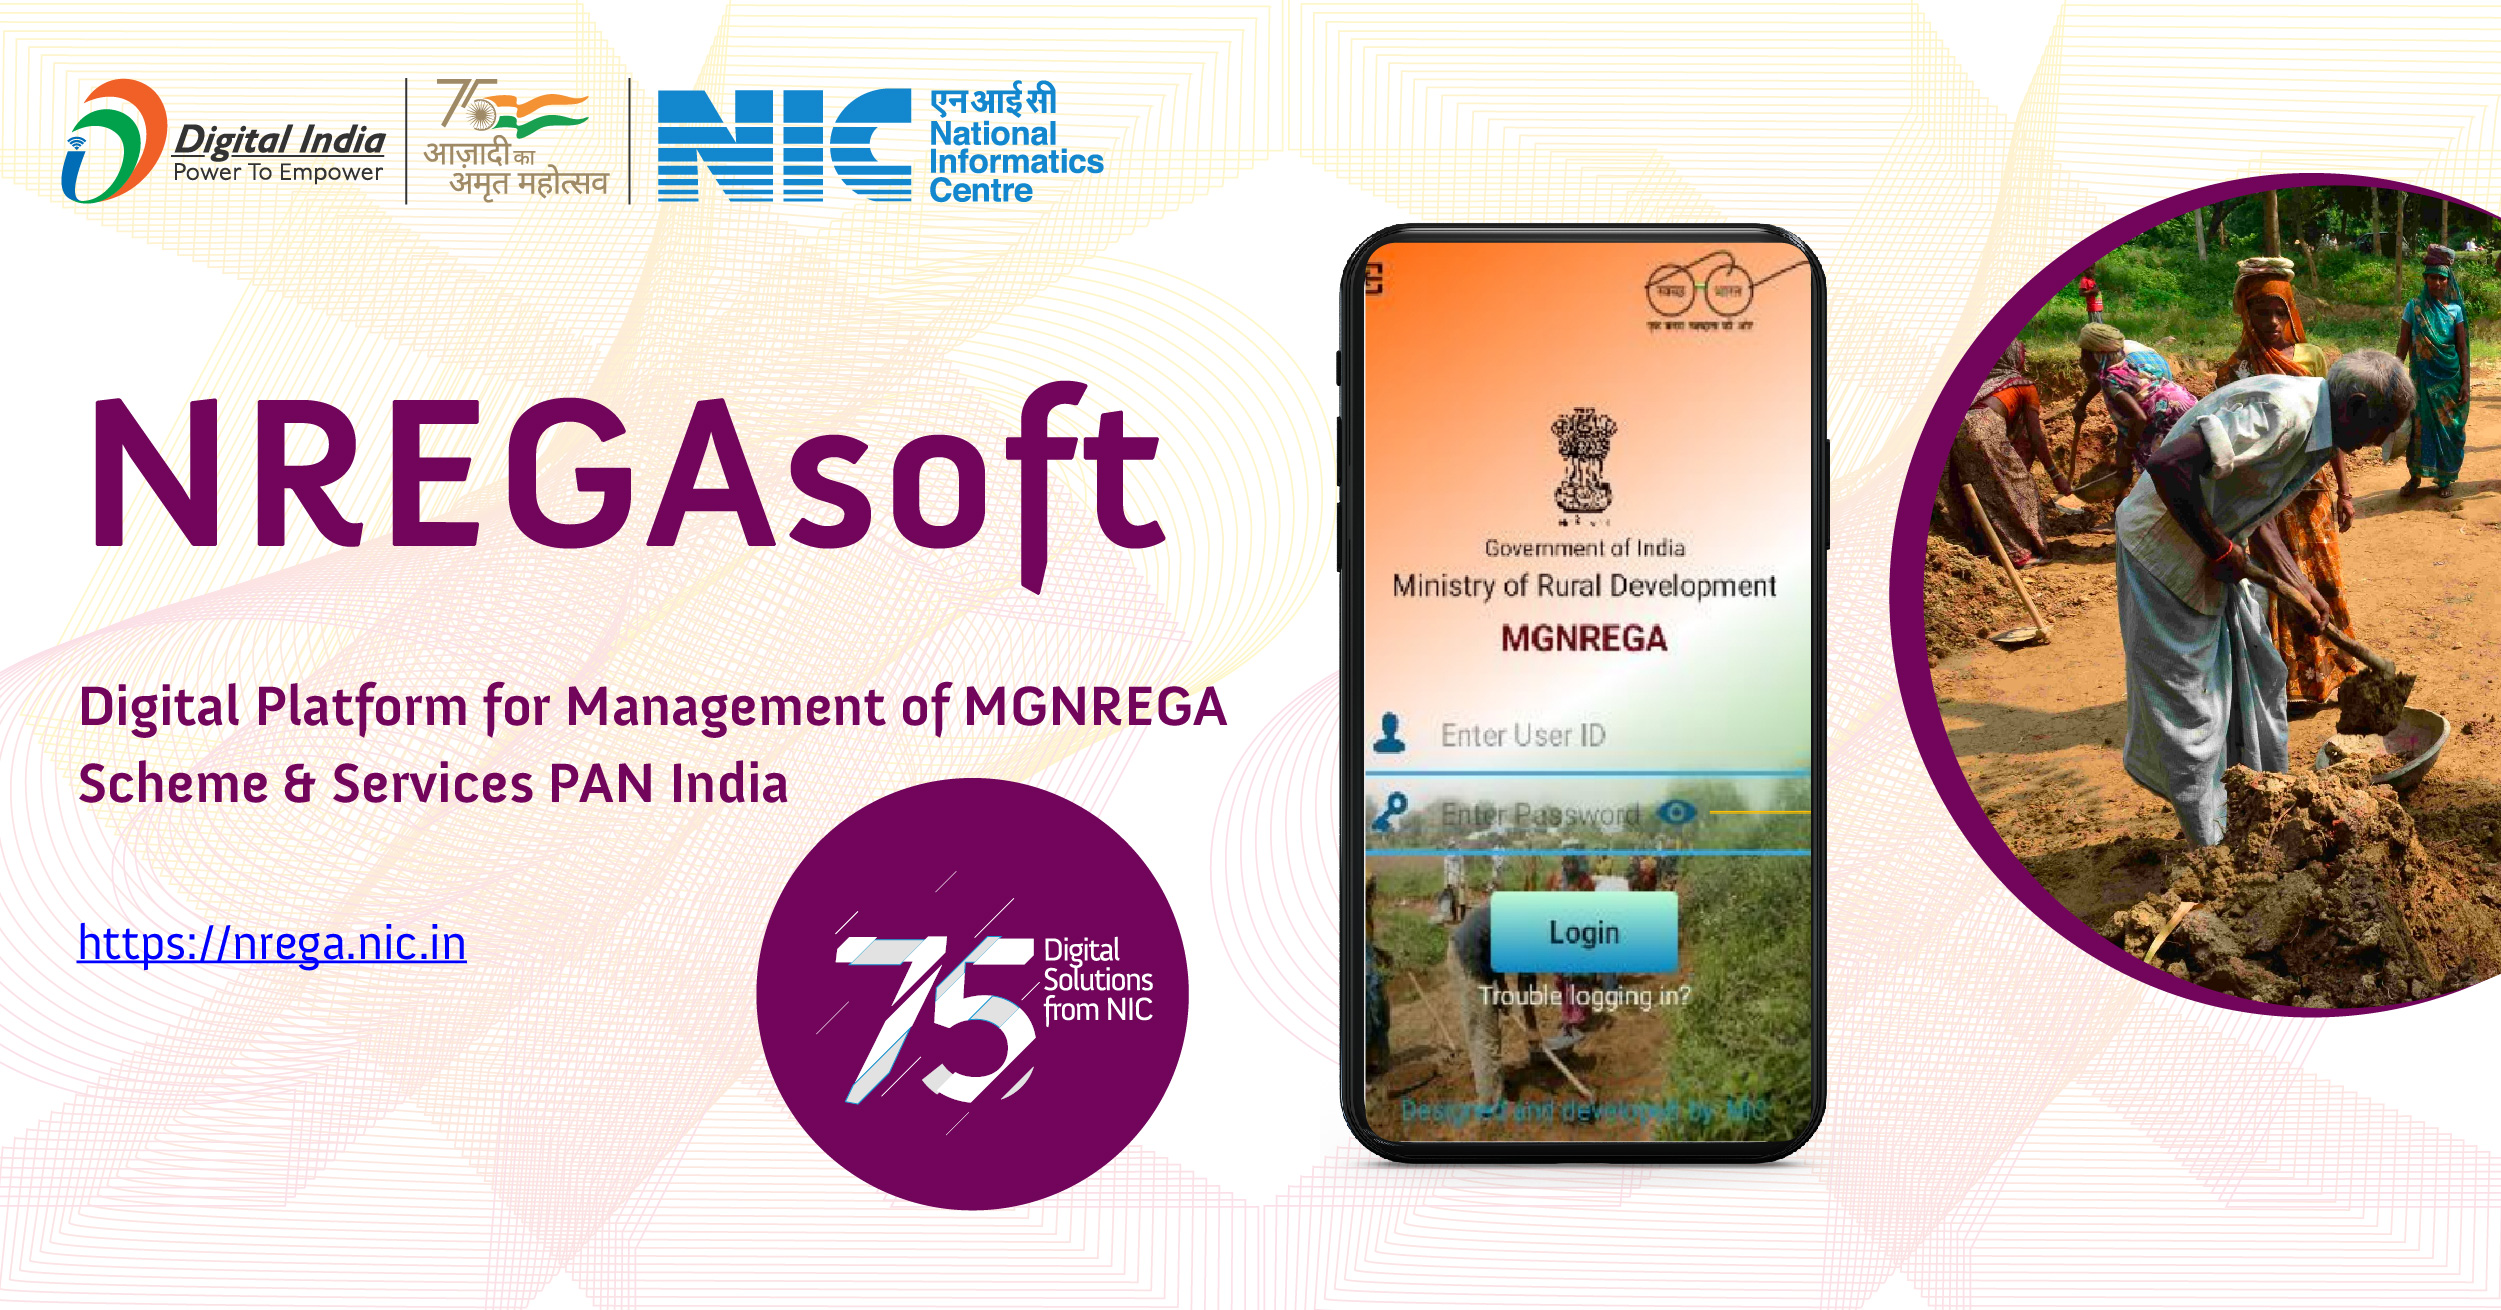 NREGASoft - महात्मा गांधी राष्ट्रीय ग्रामीण रोजगार गारंटी अधिनियम (मनरेगा) के तहत सभी गतिविधियों के लिए एक एंड-टू-एंड वर्कफ़्लो आधारित ई-गवर्नेंस प्रणाली